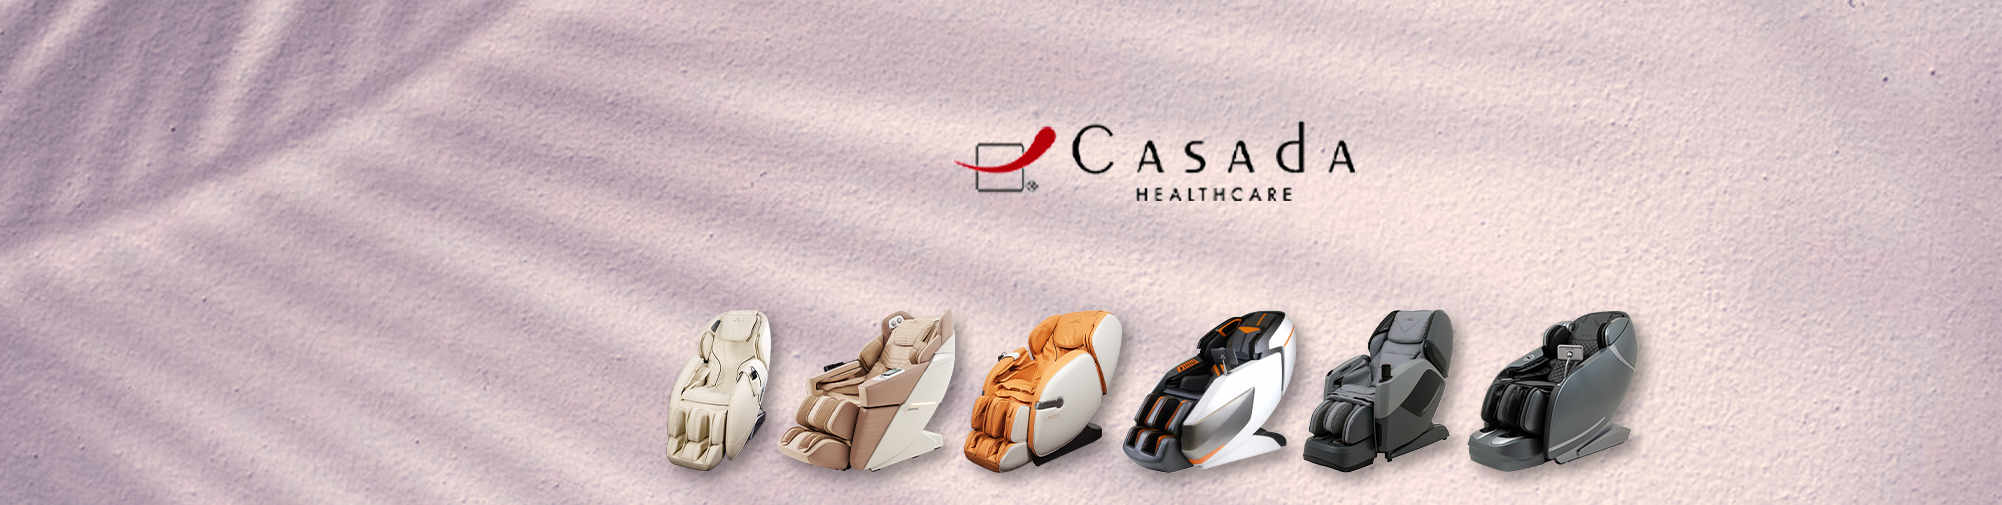 Casada - विश्वसनीय साथी | मालिश कुर्सी की दुनिया